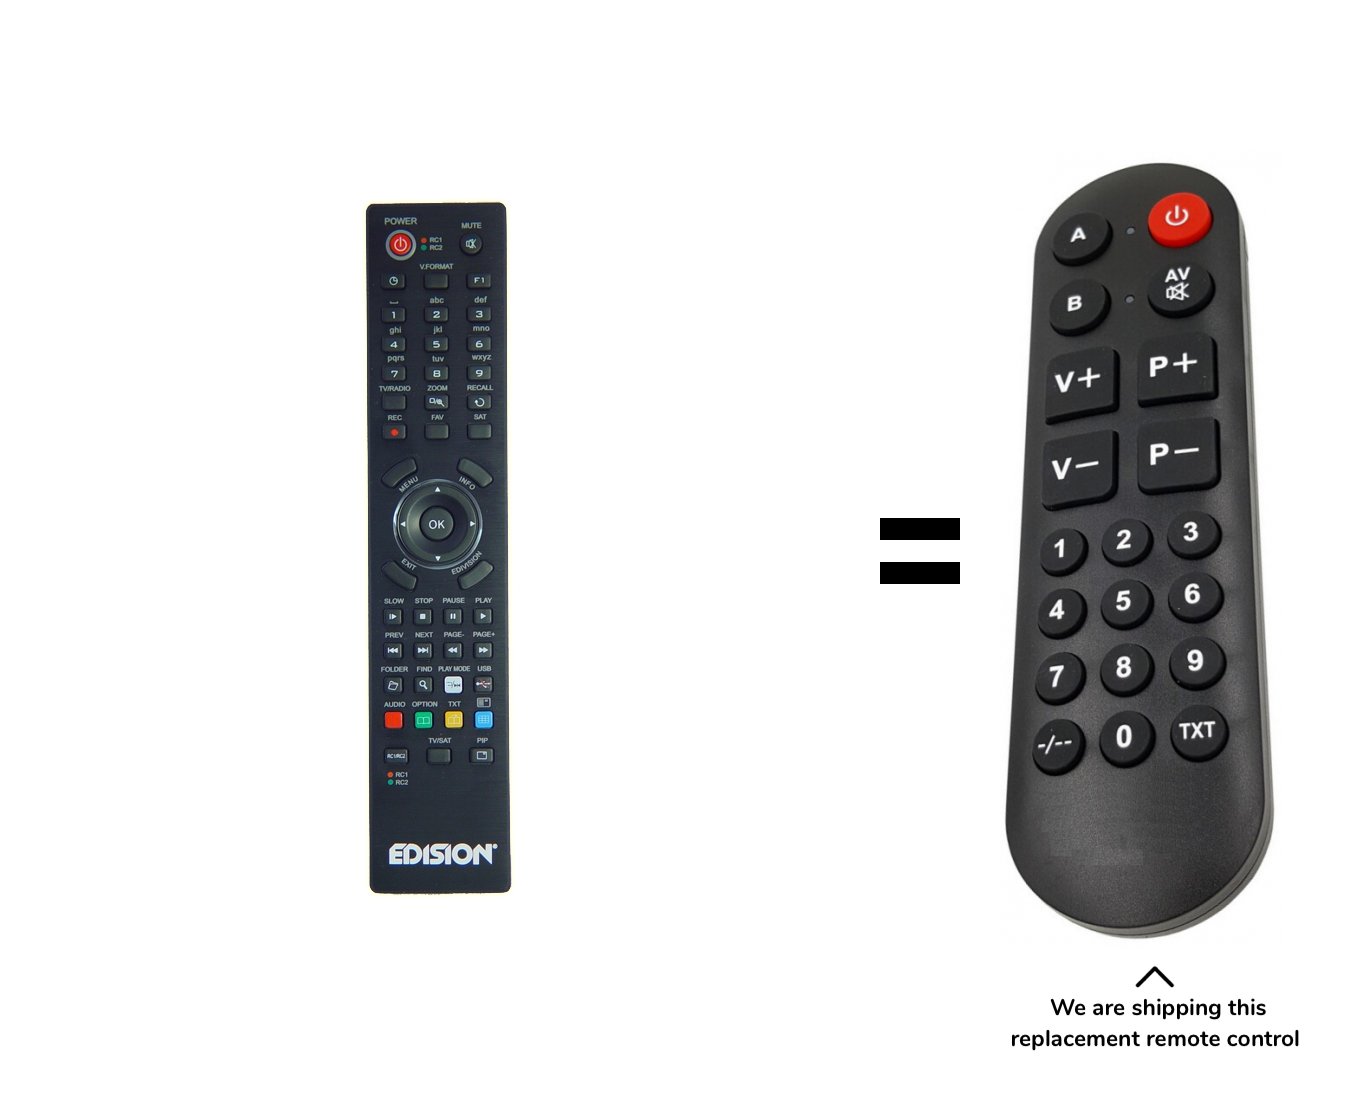 Edision ARGUS remote control for seniors